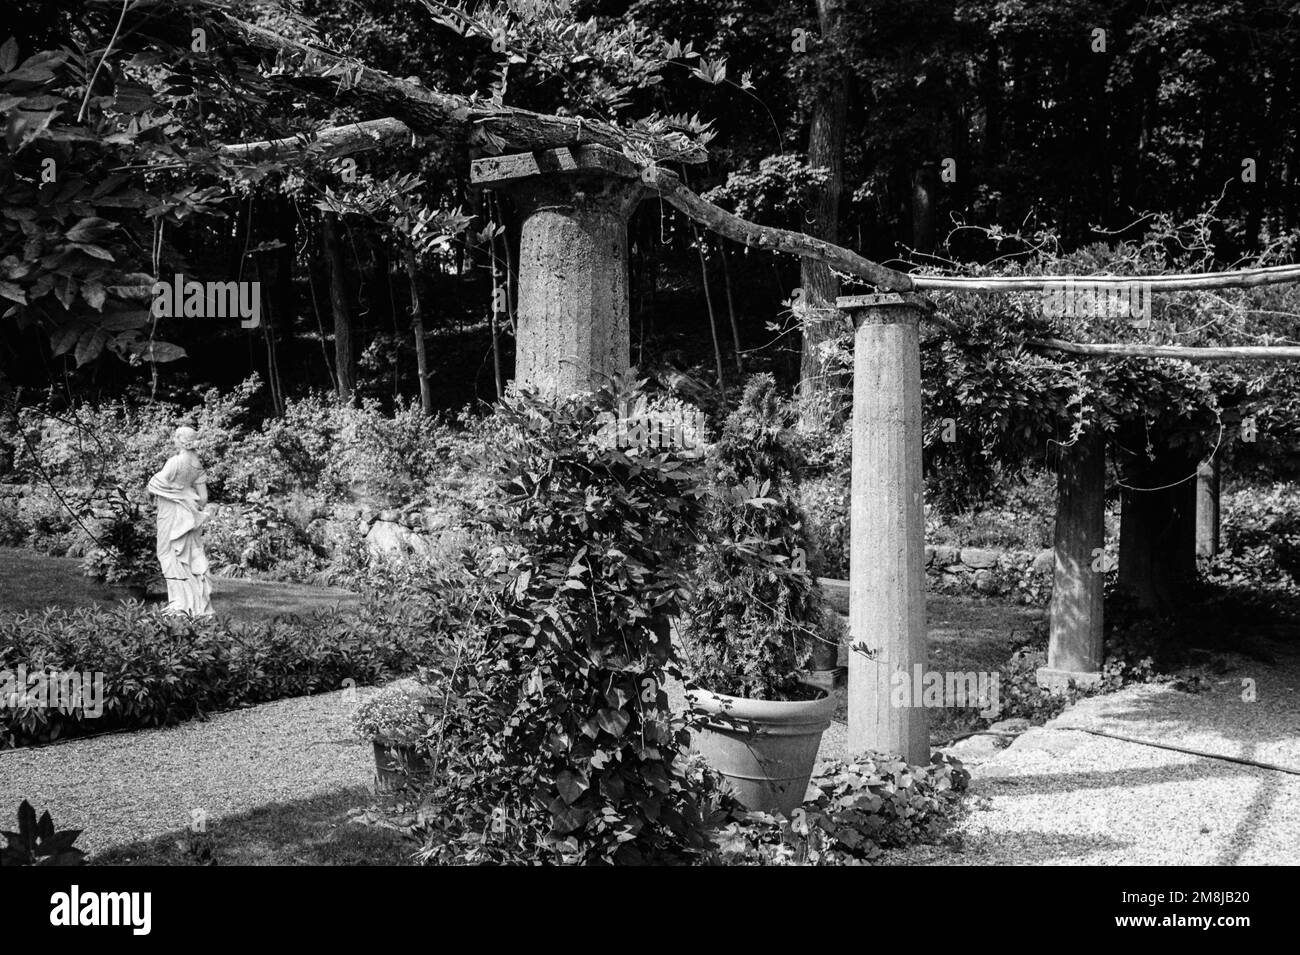 Un treillis de vigne en pierre se trouve dans un jardin italien du domaine de Codman. Lincoln, Massachusetts. L'image a été capturée sur un film analogique. Banque D'Images